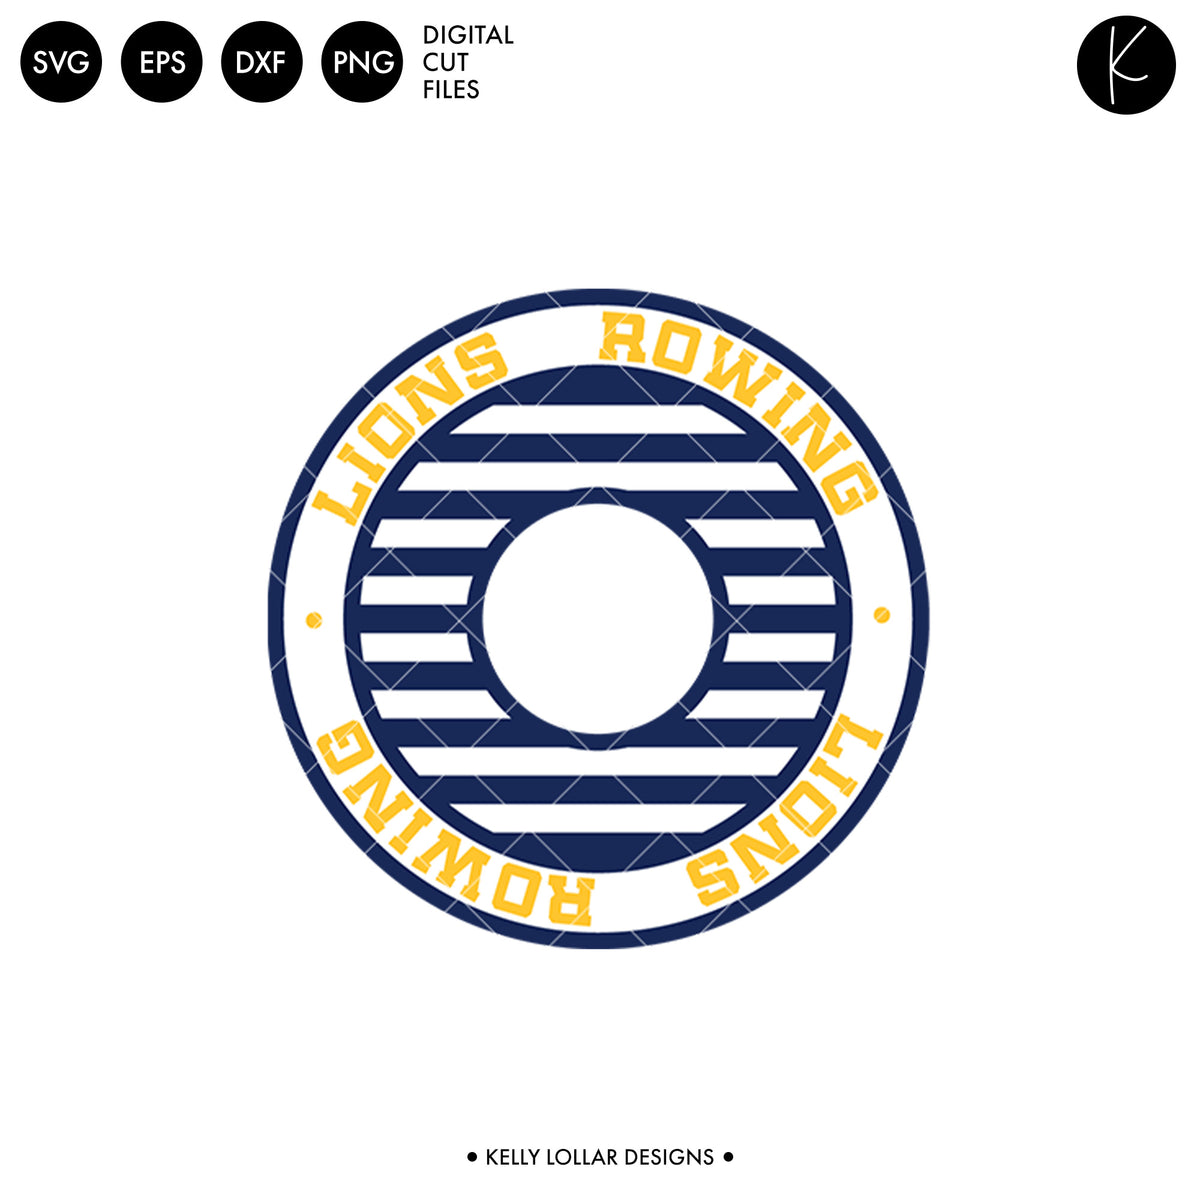 Lions Rowing Crew Bundle | SVG DXF EPS PNG Cut Files